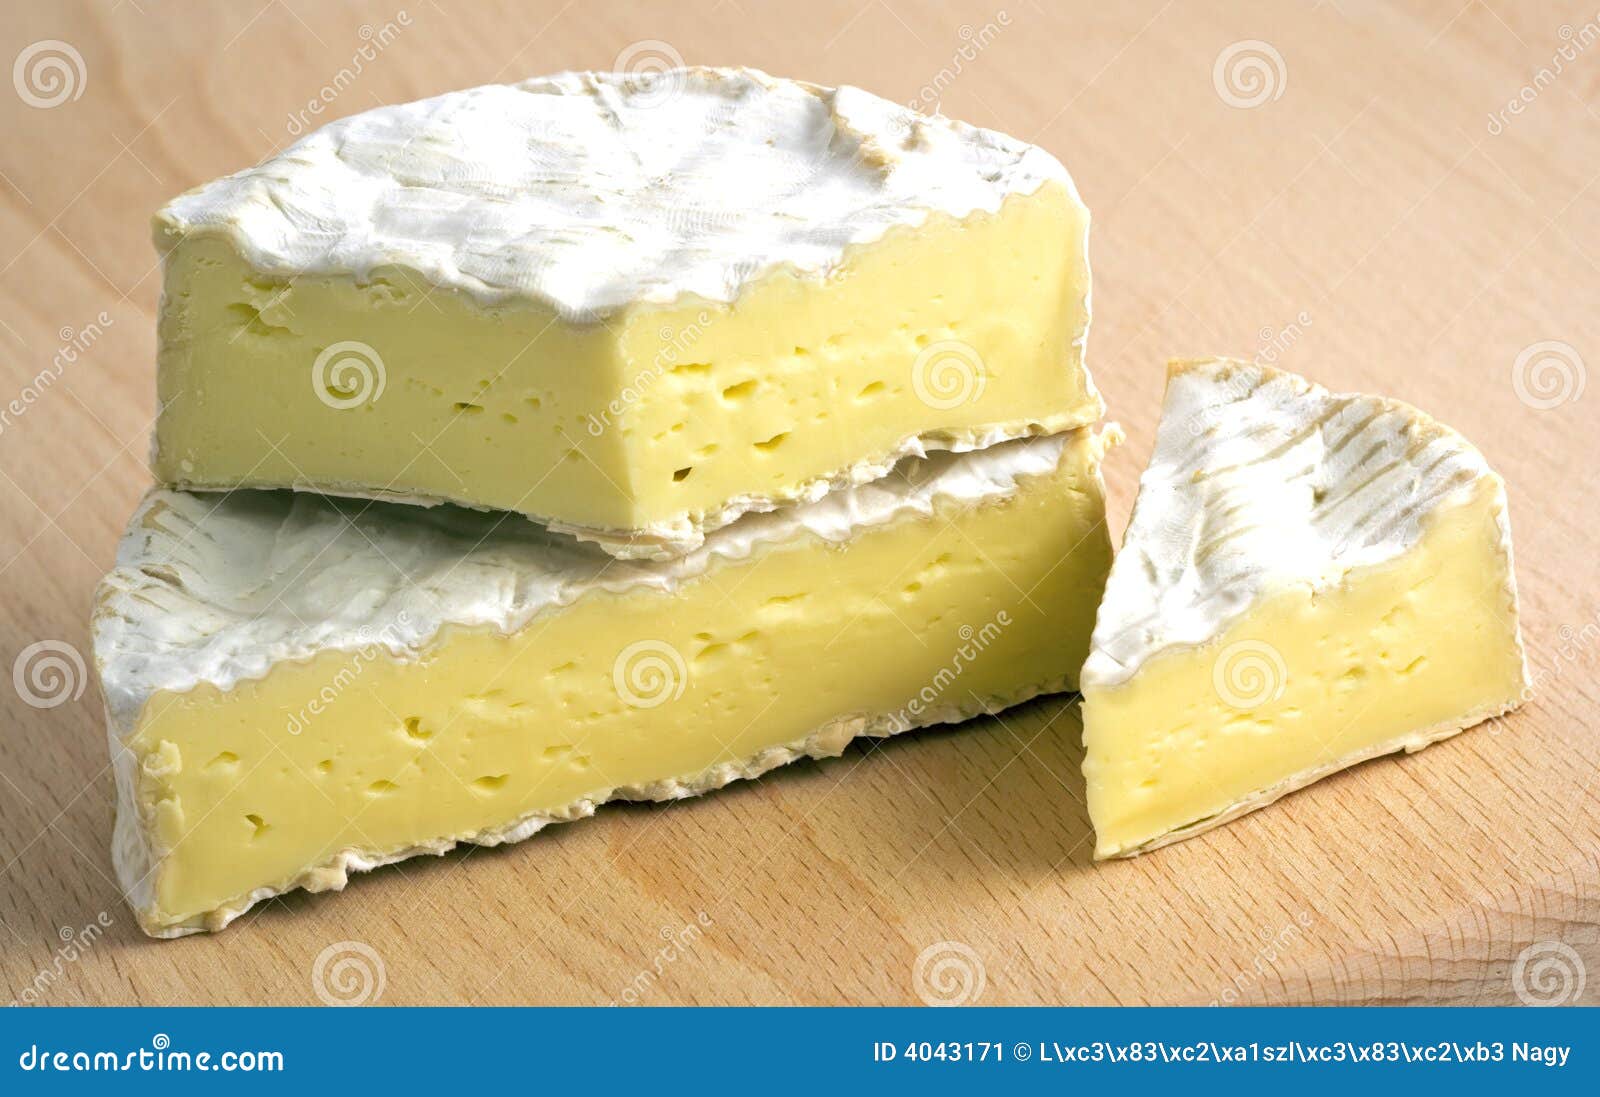 fresh camembert cheese